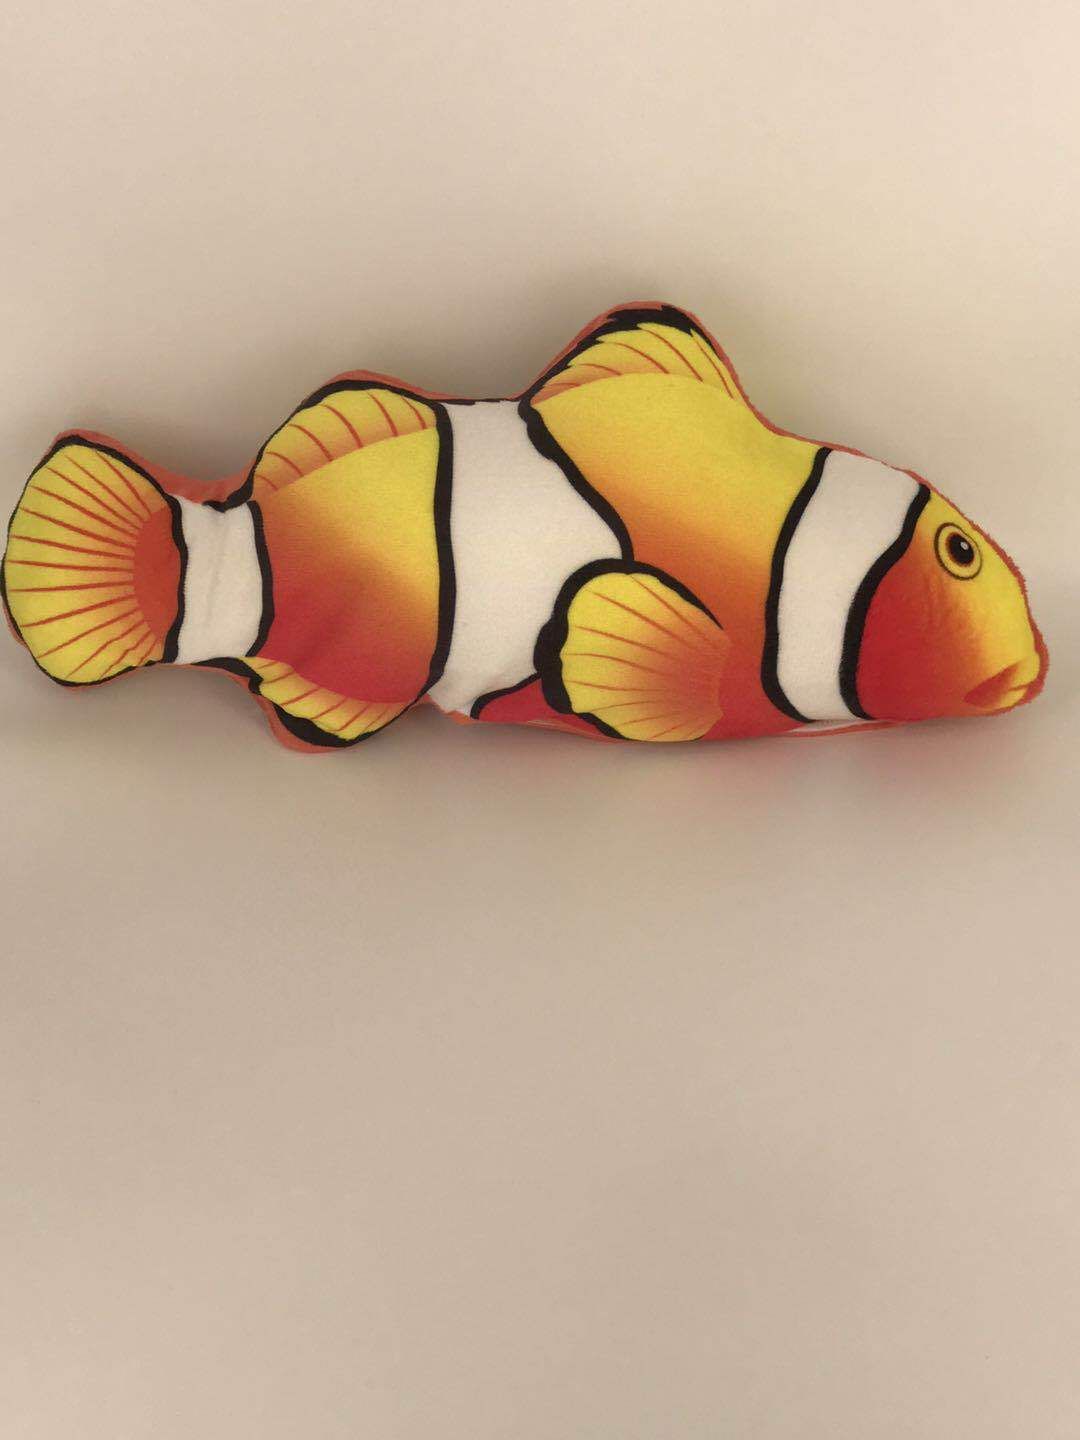 Clown Fish carregamento USB